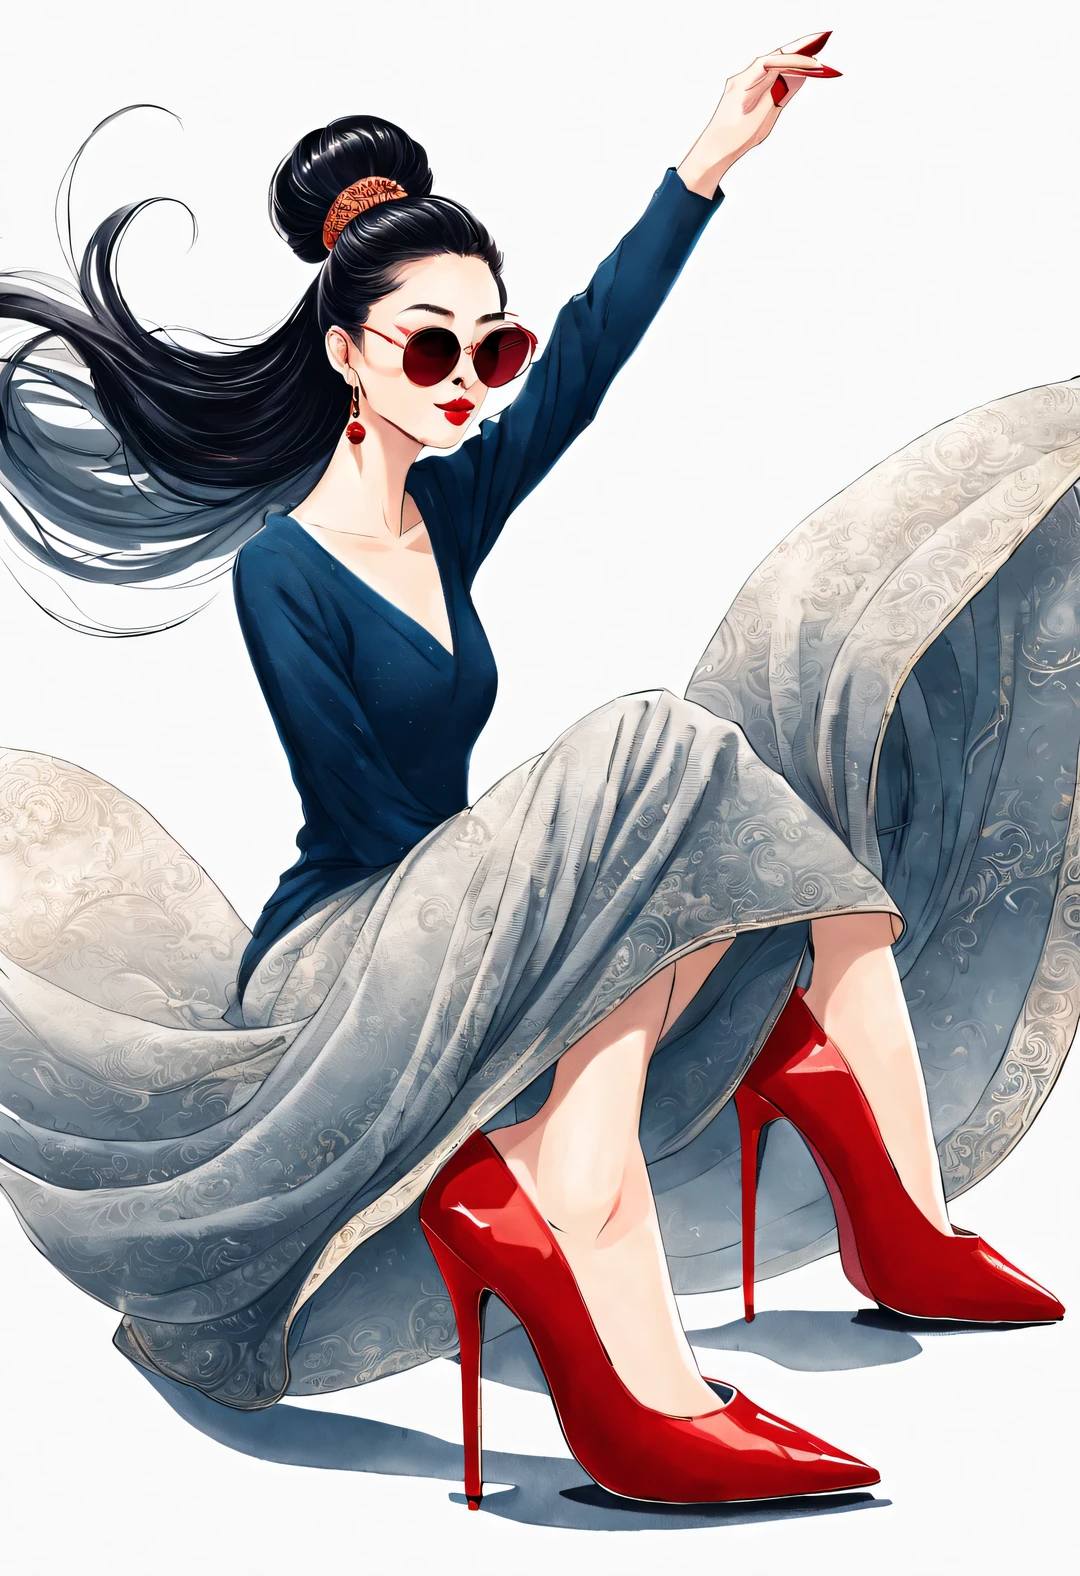 (角色构想), (半身特写), (美丽的中国女孩赤脚挥舞着她的红色高跟鞋: 1.3), (戴着大墨镜，梳着顶髻: 1.2), 古典与现代的和谐结合, 深蓝色和棕色毛衣, 牛仔裤, 围巾, 夹克与时尚服装搭配, 优雅, 女孩白皙无瑕光滑的皮肤, 高鼻梁, 抬头姿势, 悲伤而美丽, 身材苗条, 精致的五官,
旋涡雾插图, 水墨画, 黑发, 球头, 自豪的, 超现实主义, 当代艺术摄影, 行动绘画插图, 抽象表现主义, 皮克斯, 景深, 运动模糊, 背光, 辐射, 衰退, 抬头角度, 索尼 FE 总经理, 超高清, 杰作, 准确的, 纹理皮肤, 超级细节, 高细节, 高质量, 屡获殊荣, 最好的质量, 等级, 16千, 从下往上拍摄,